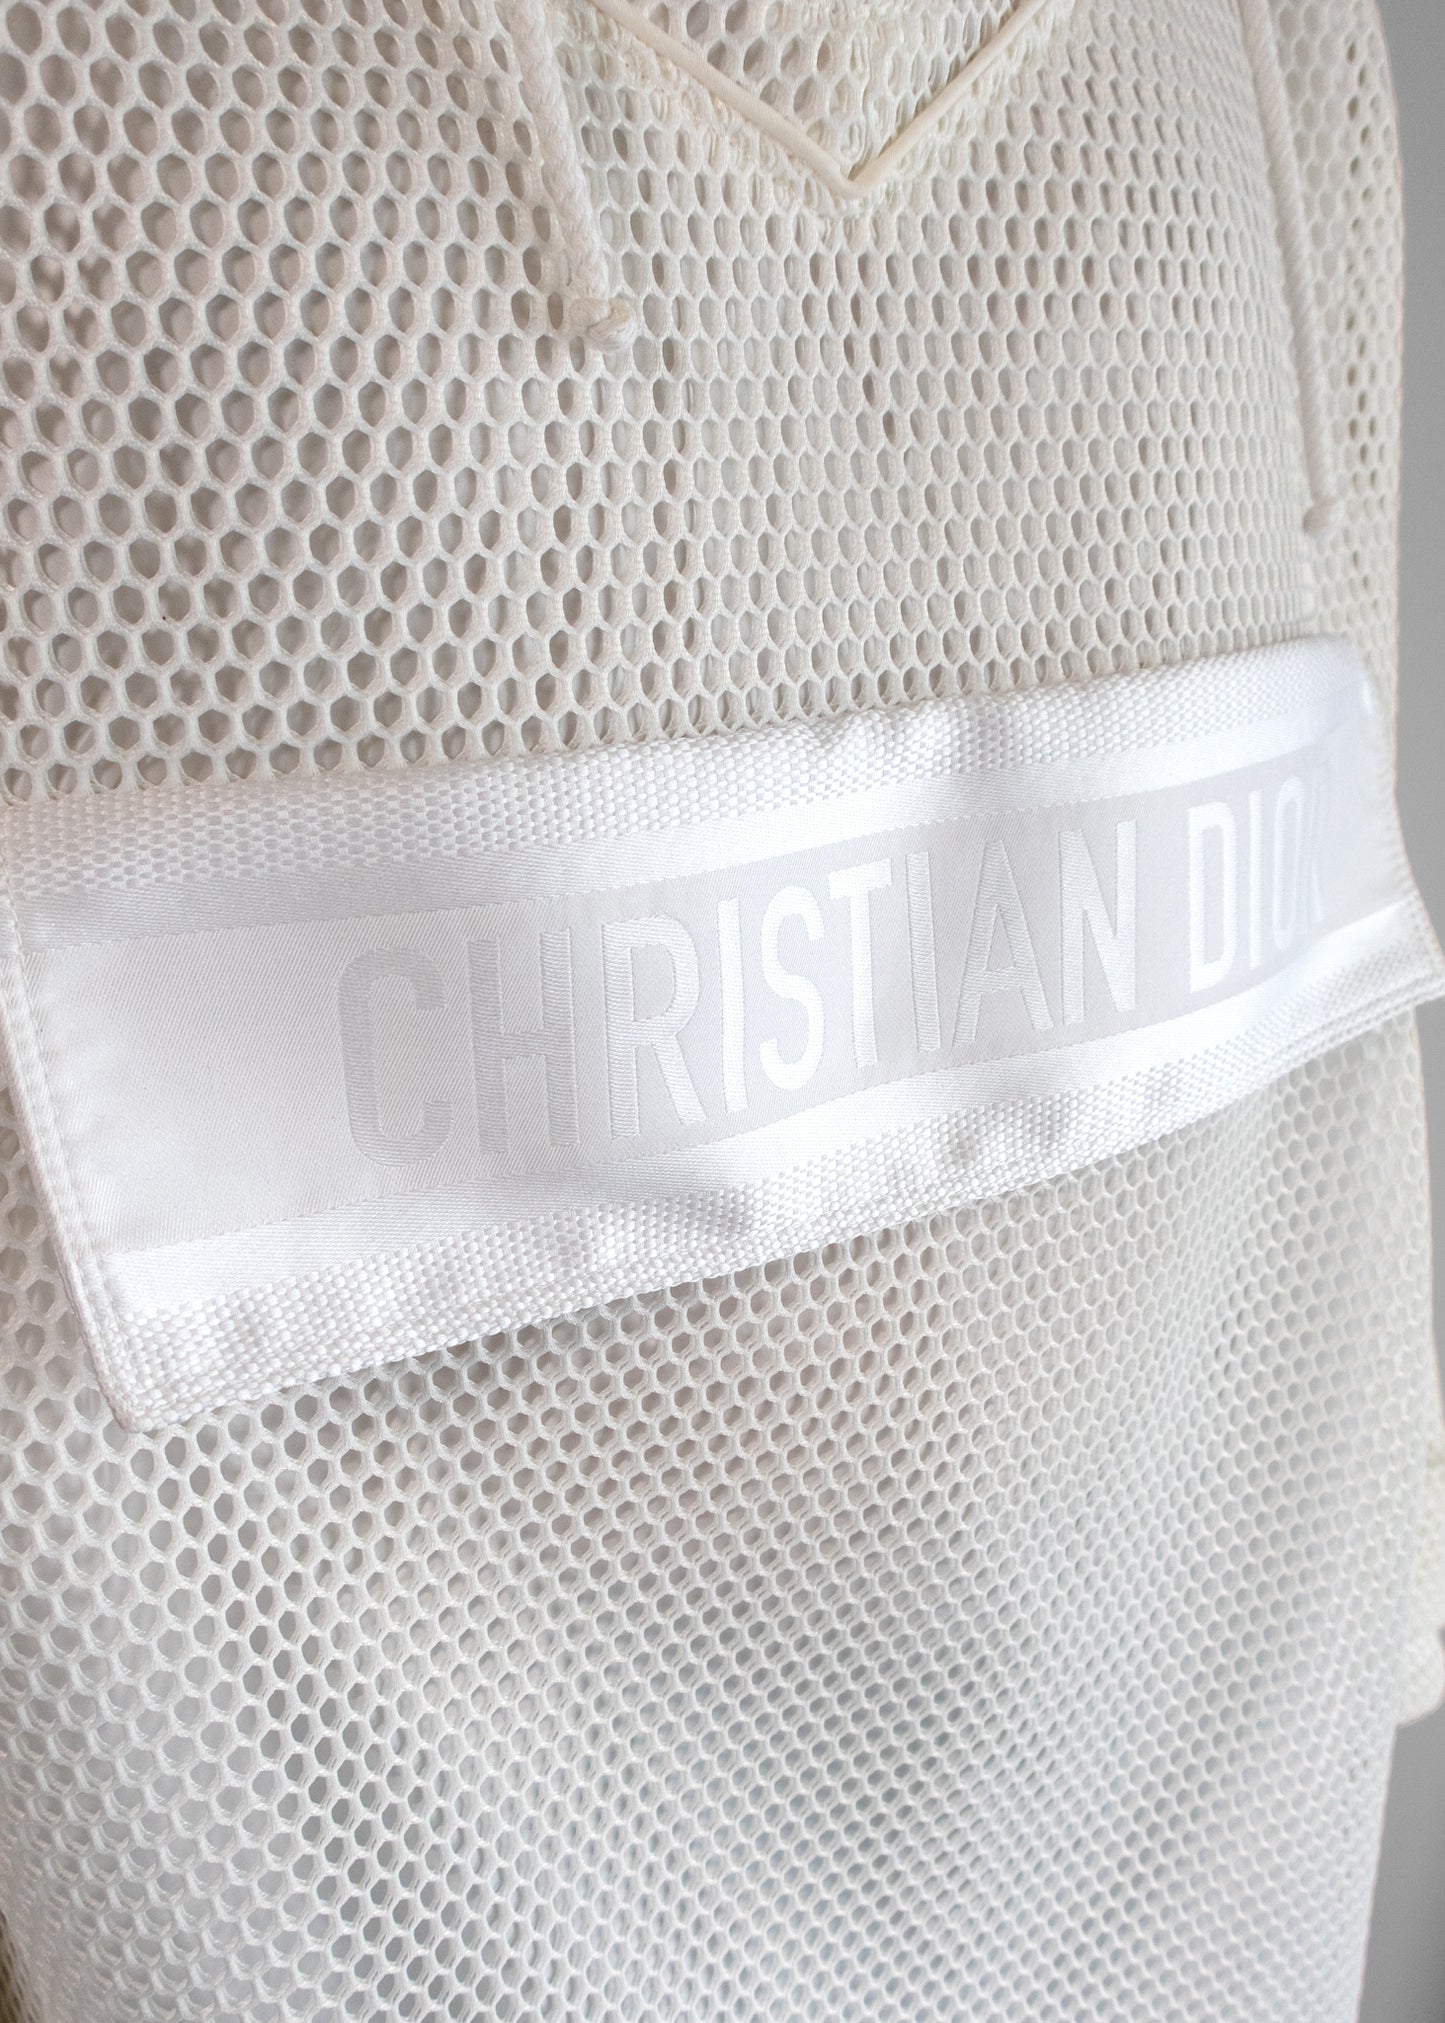 Christian Dior White Mesh Anorak